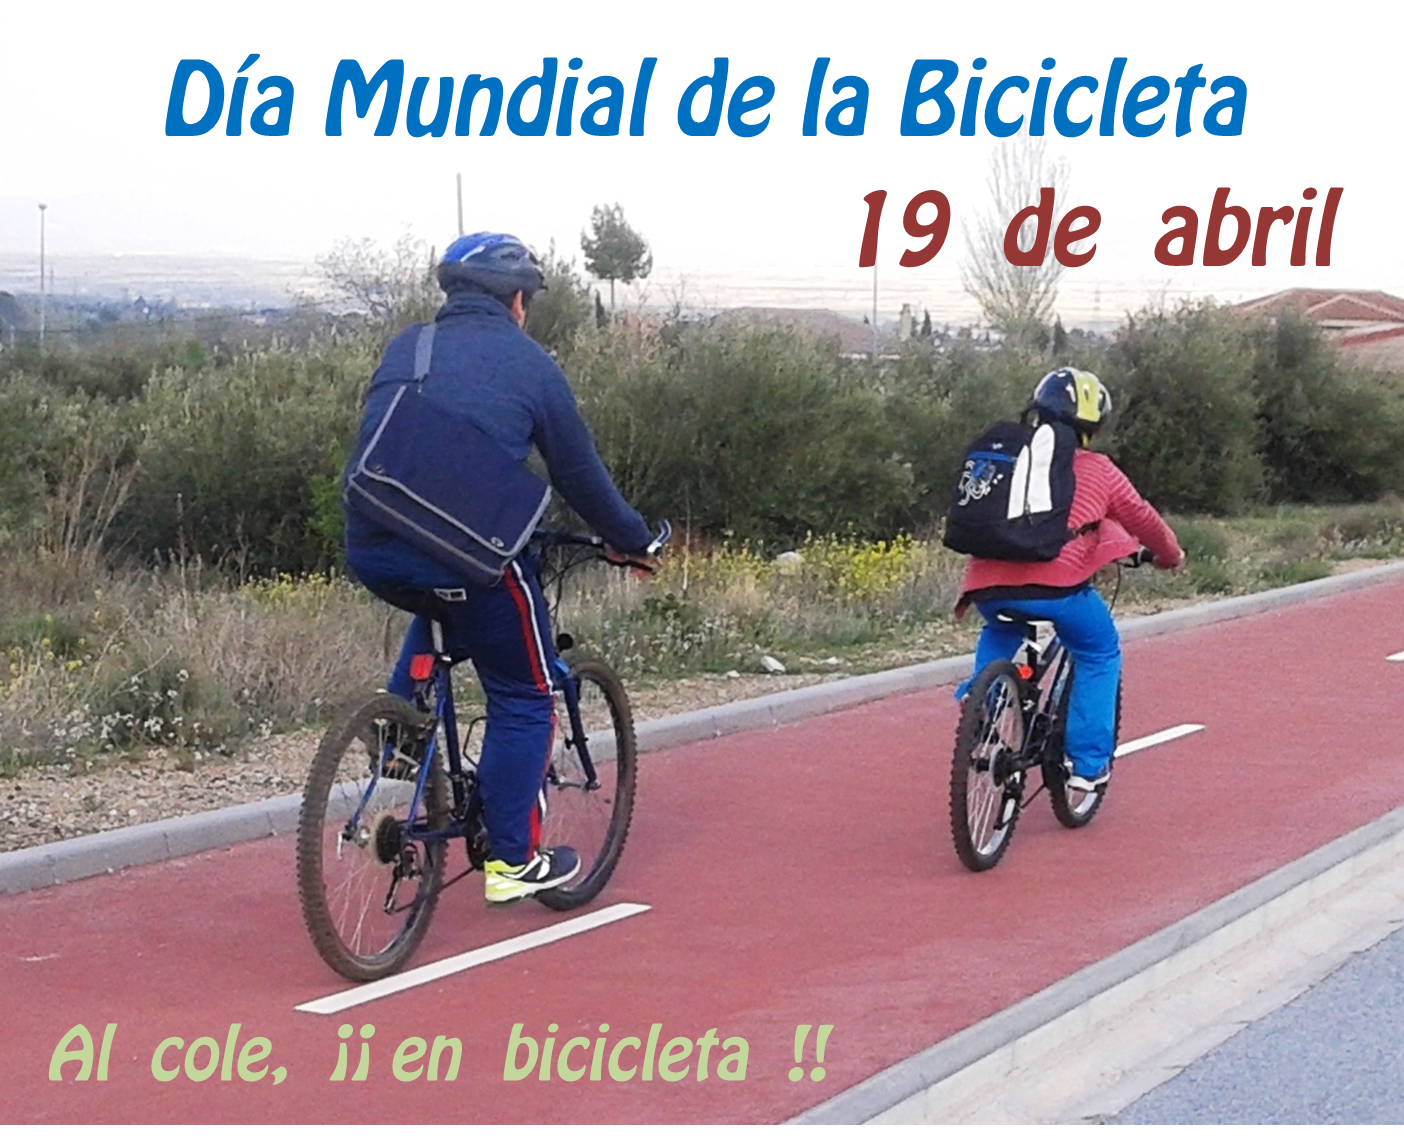 19 de abril - Día Mundial de la Bicicleta